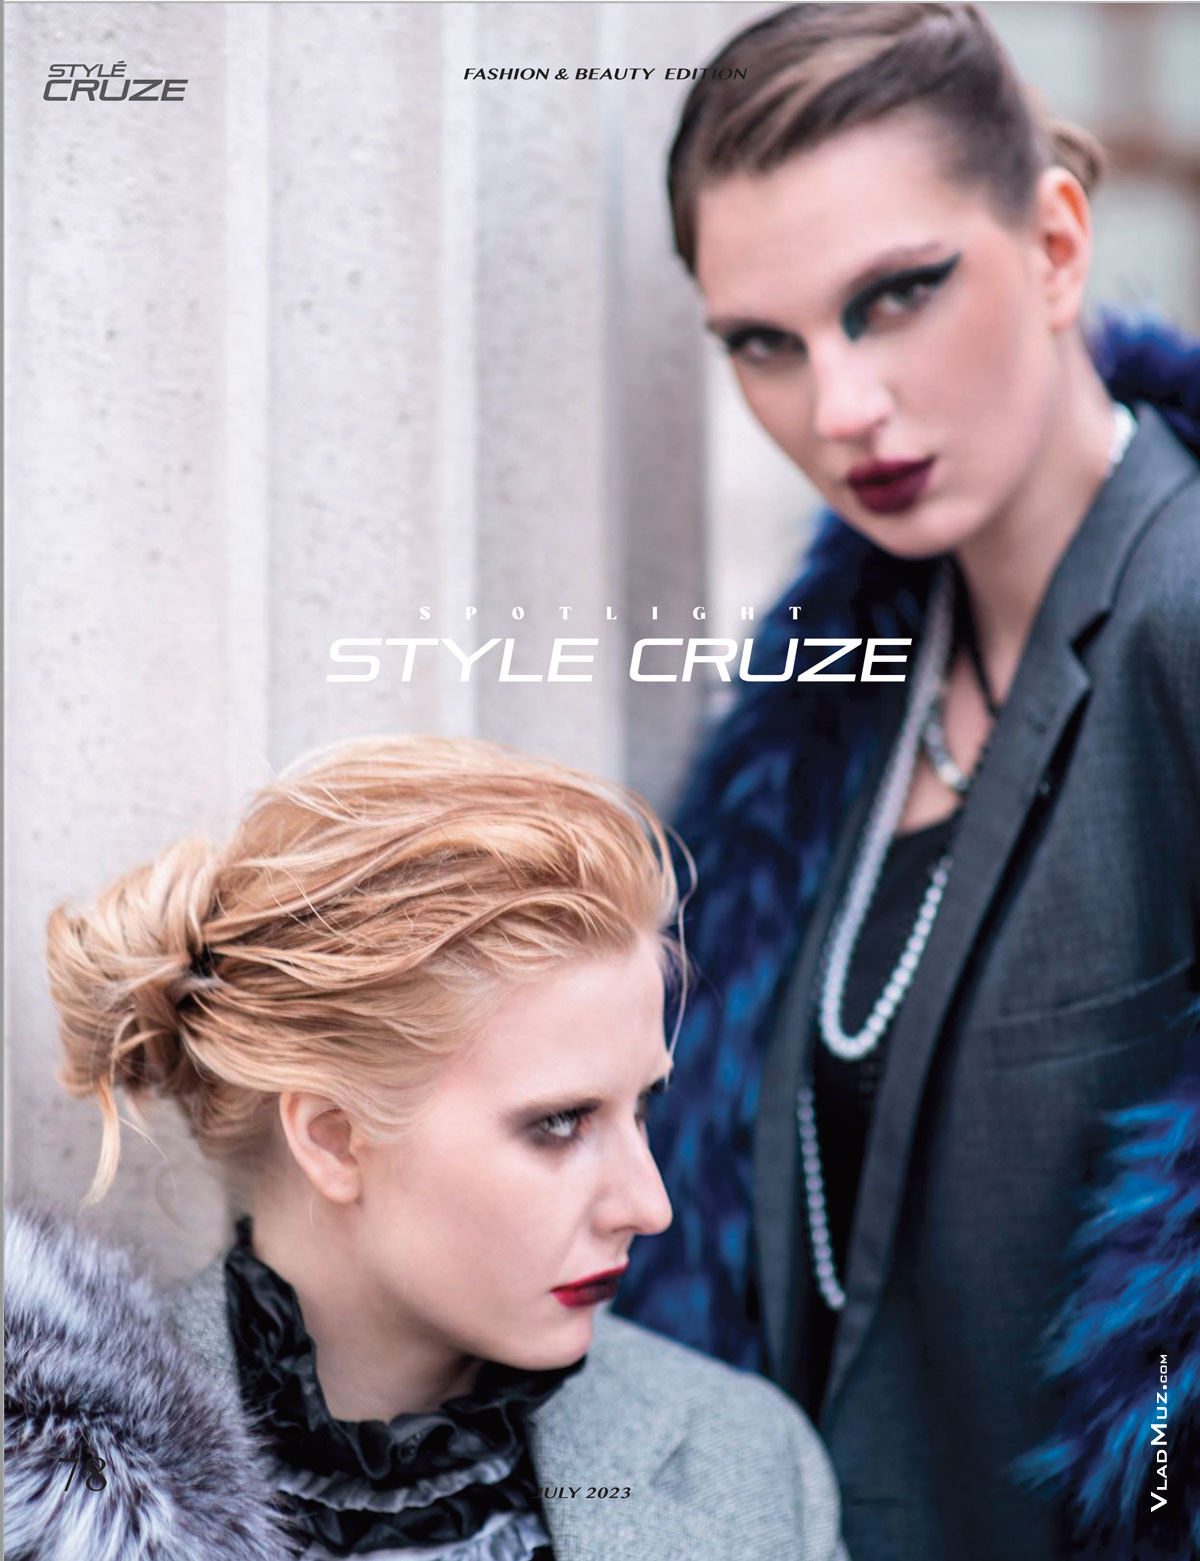 Фото 2-х девушек-моделей из серии модных фотографий для журнала Style Cruze Magazine